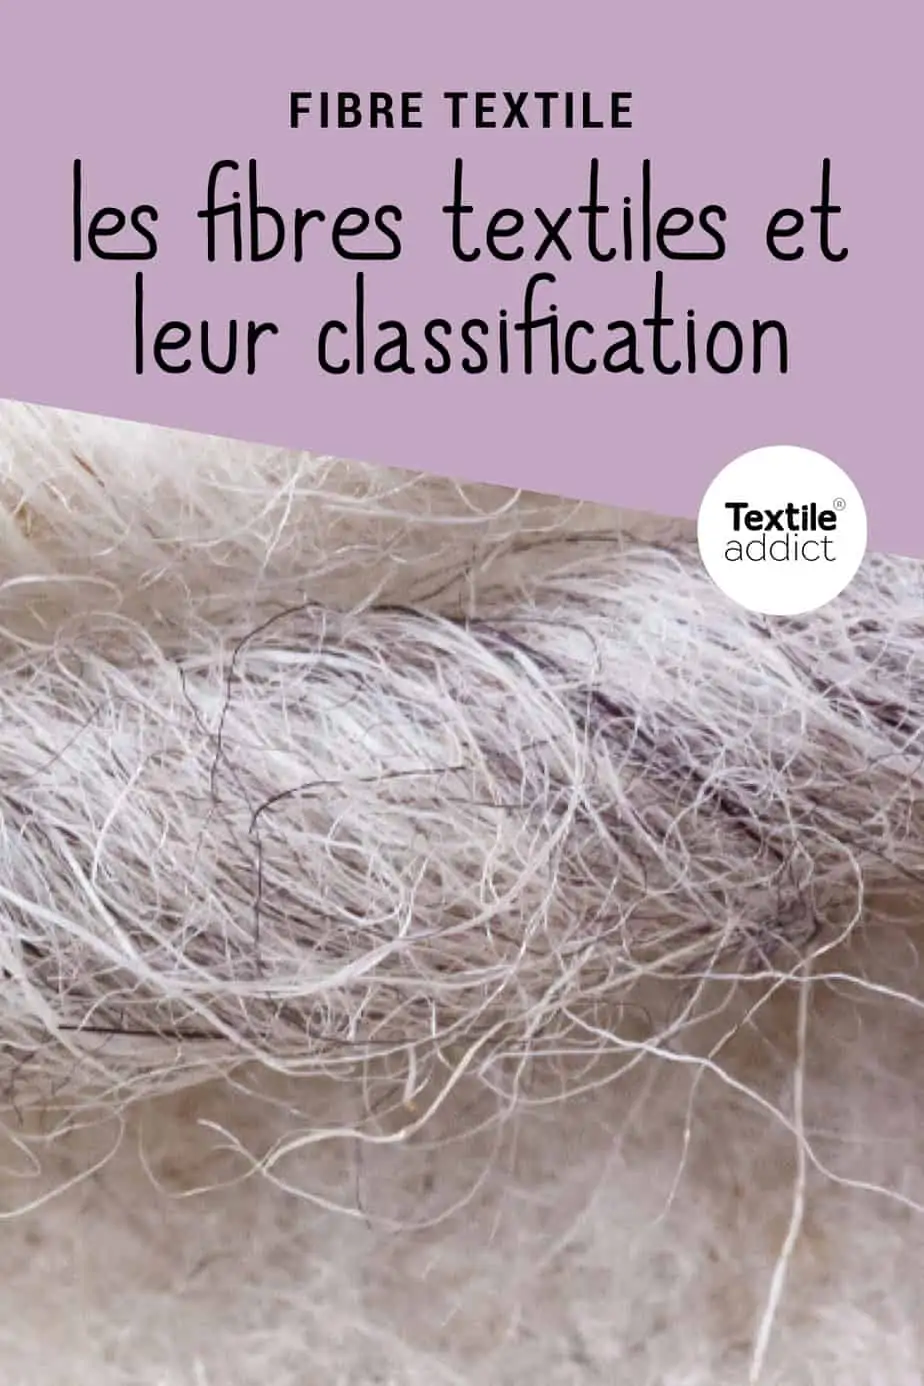 Les Différents Types de Tissus Textiles : Synthétique ou Naturel ?